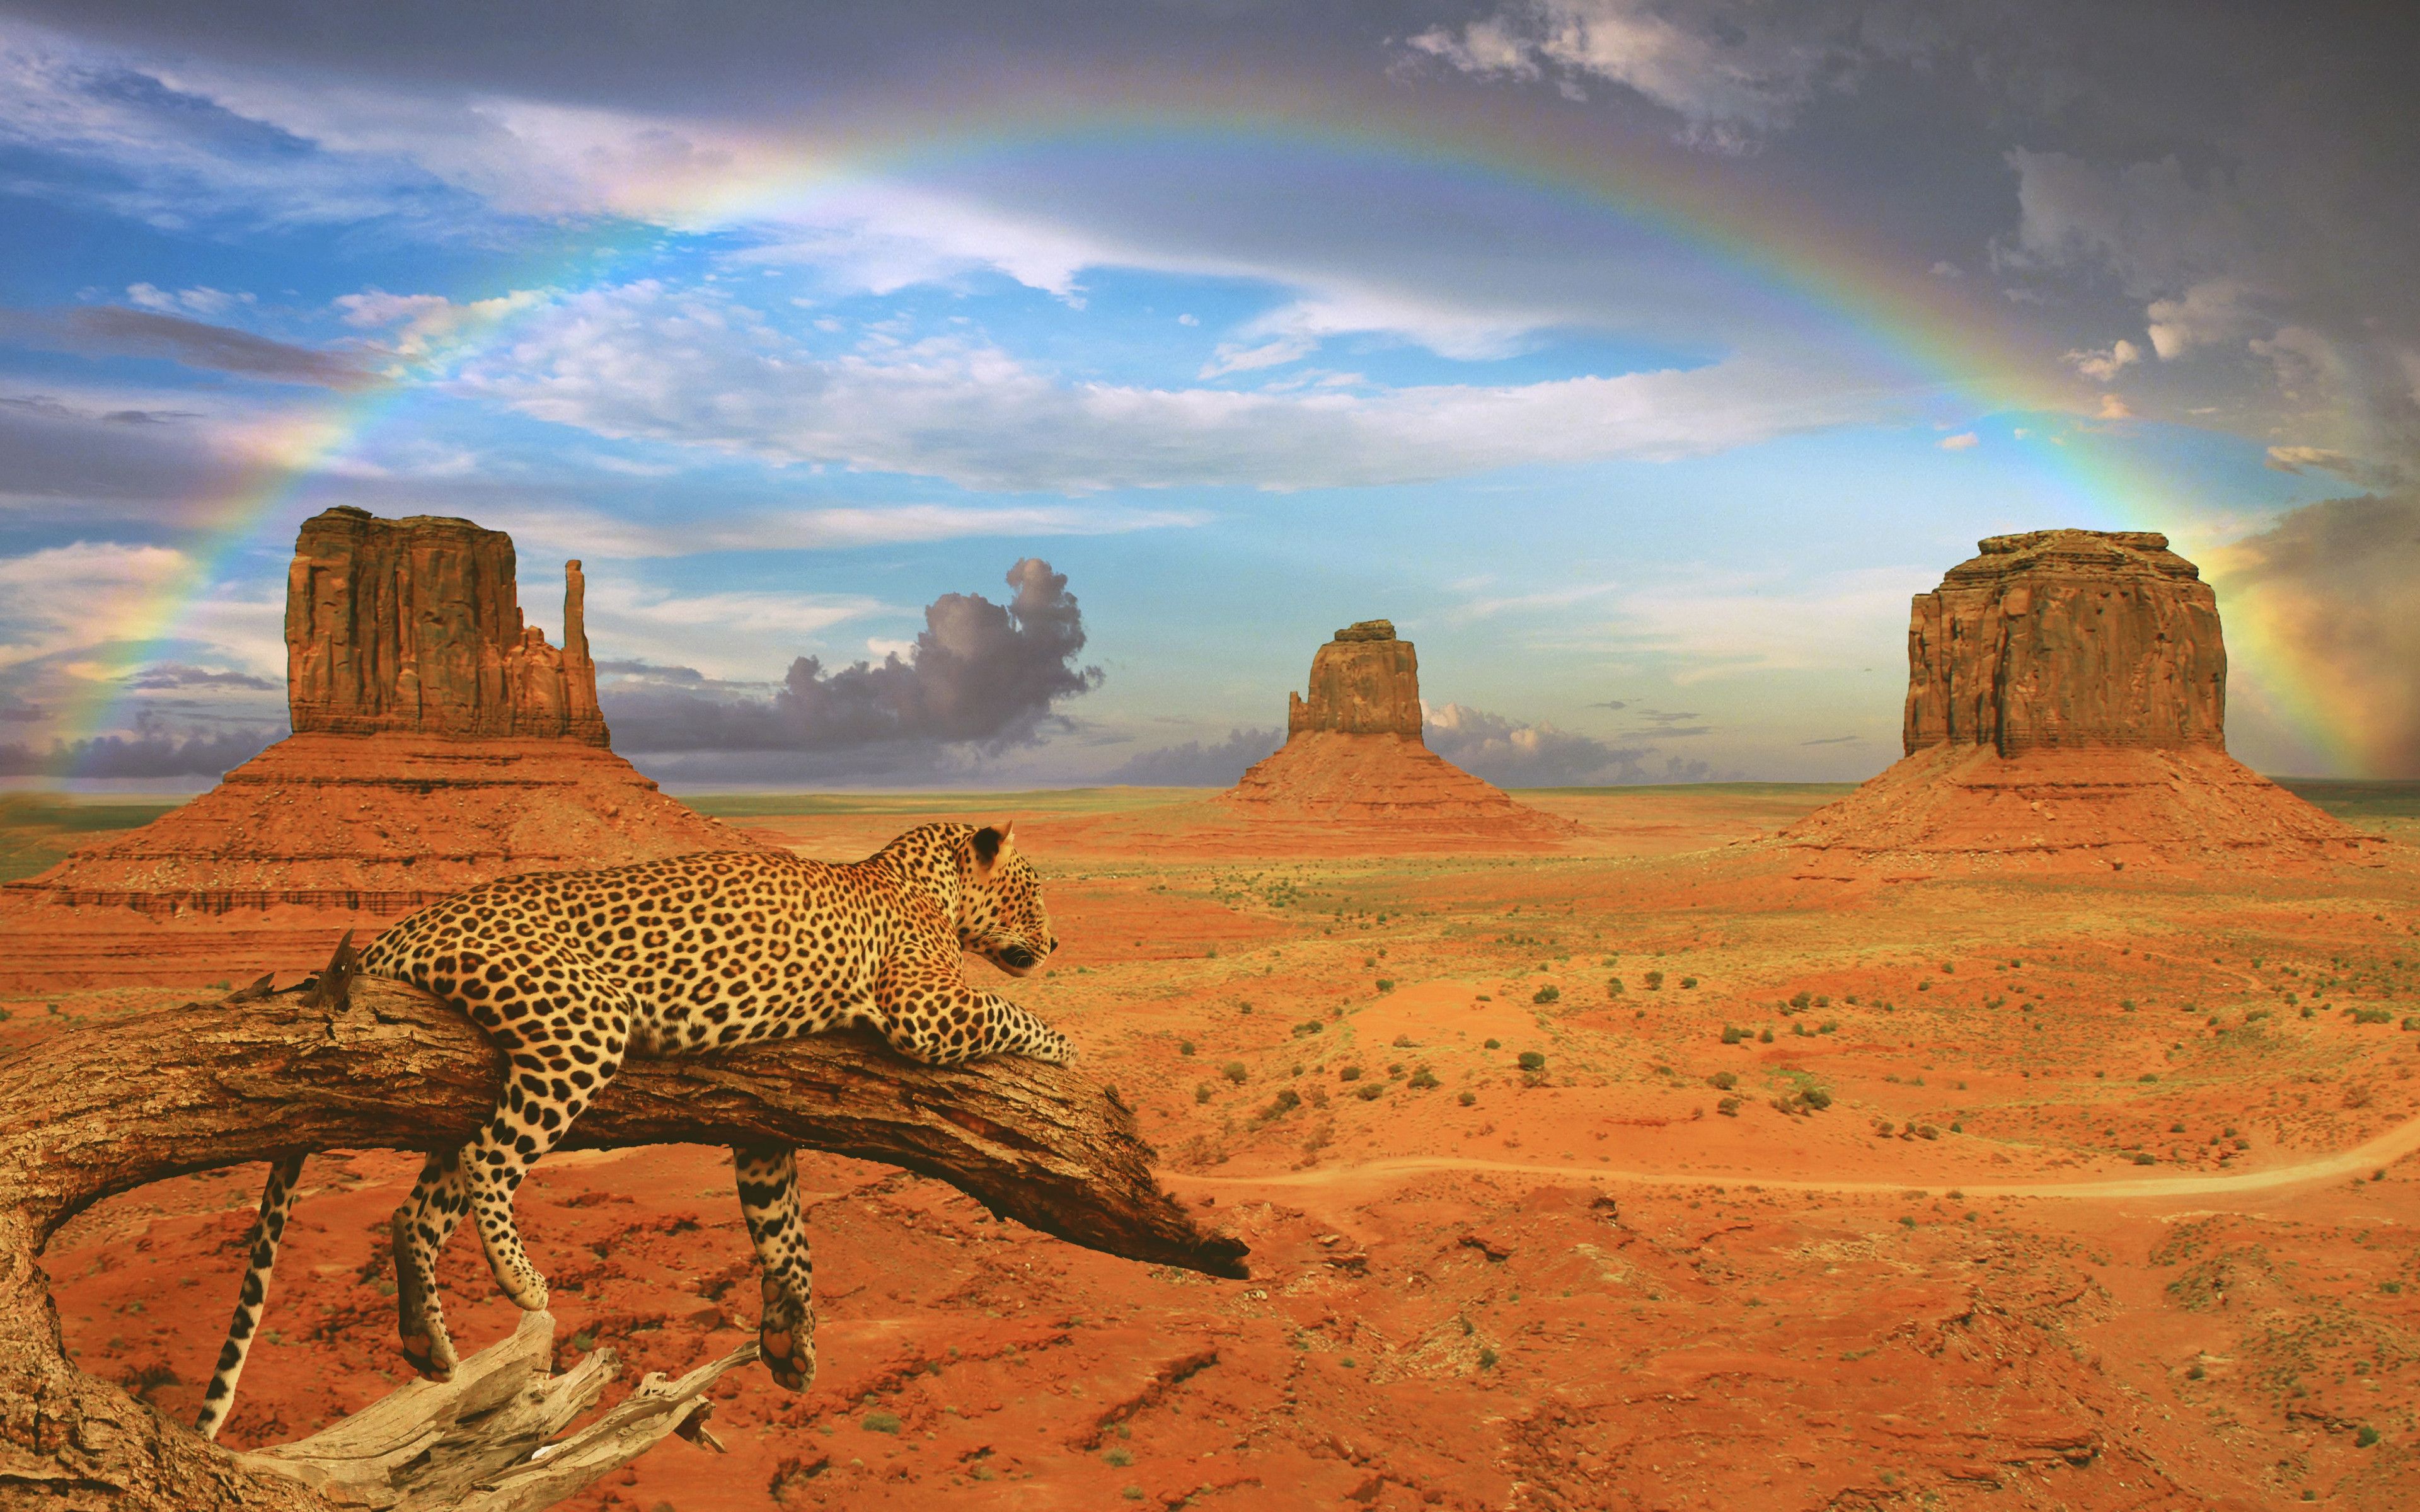 Leopard in desert landscape with rainbow Wallpaper 4k Ultra HD